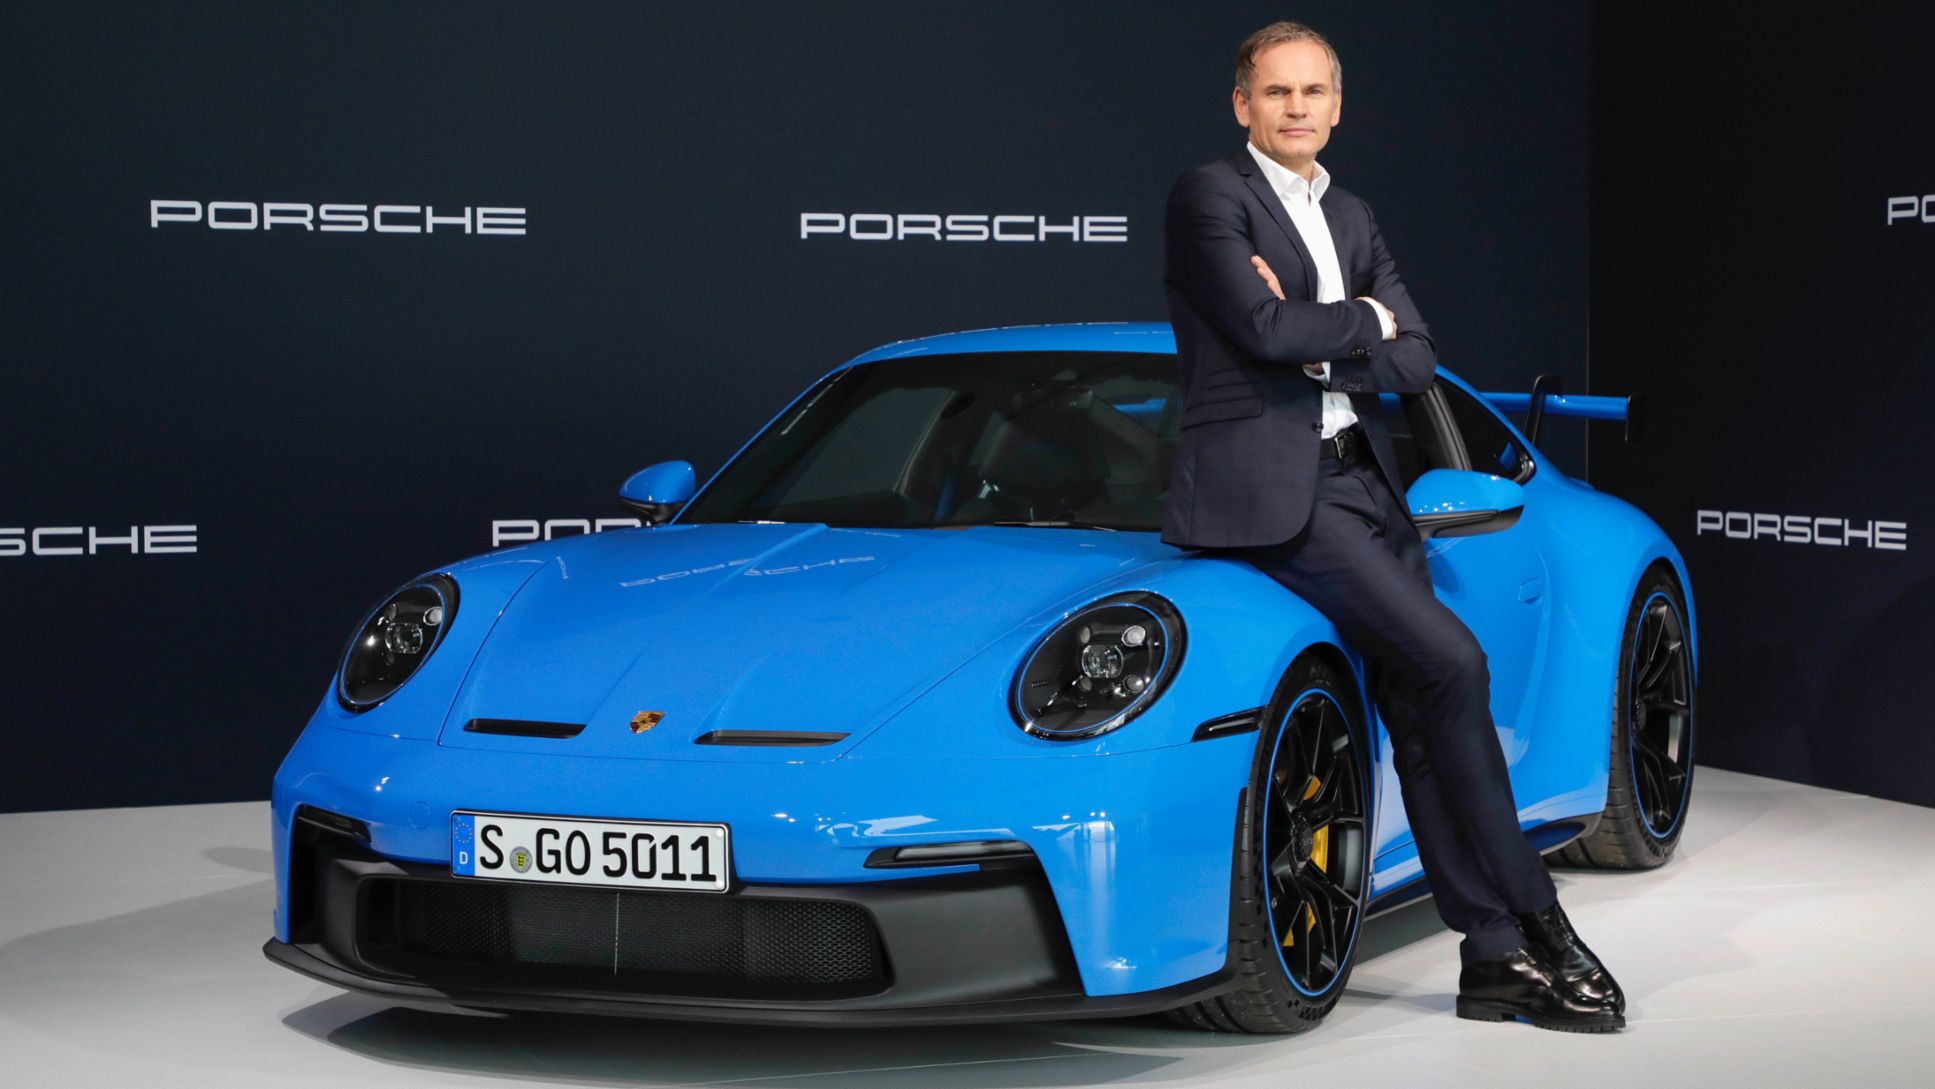 Oliver Blume, Presidente del Consejo Directivo de Dr. Ing. h.c. F. Porsche AG, conferencia de prensa anual, 2021, Porsche AG